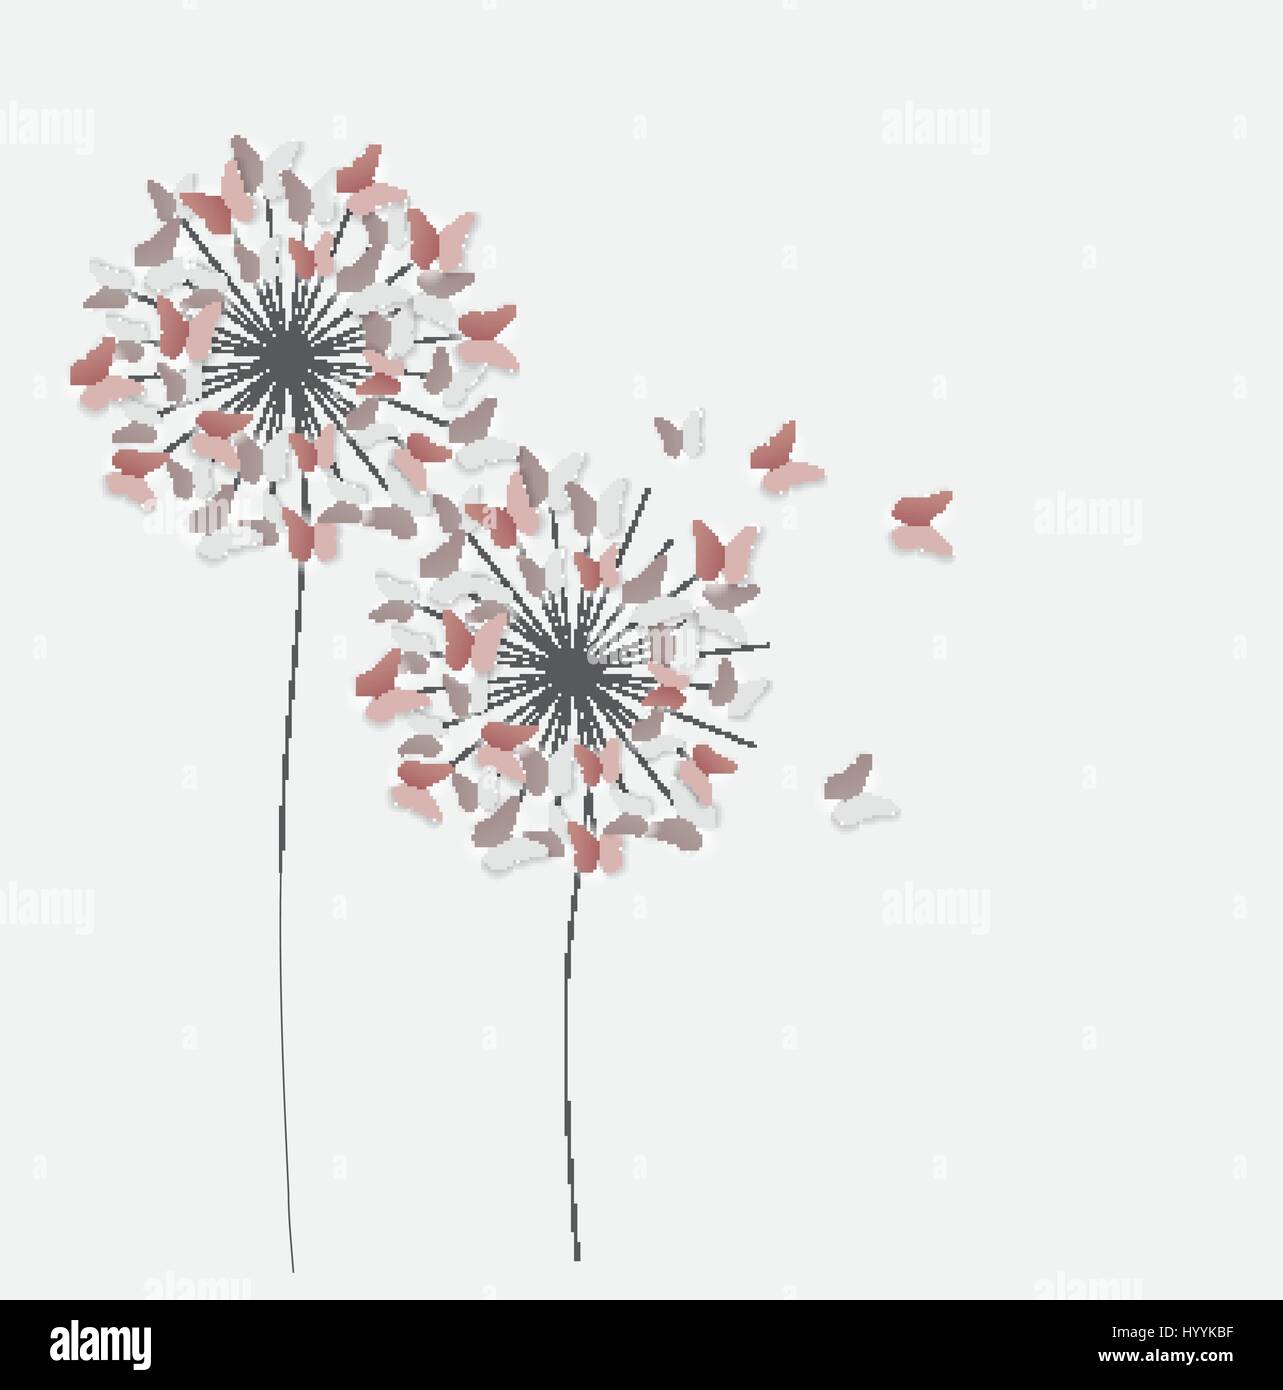 Abstrakte Scherenschnitt Schmetterling Blume Hintergrund heraus.  Vektor-Illus Stock-Vektorgrafik - Alamy